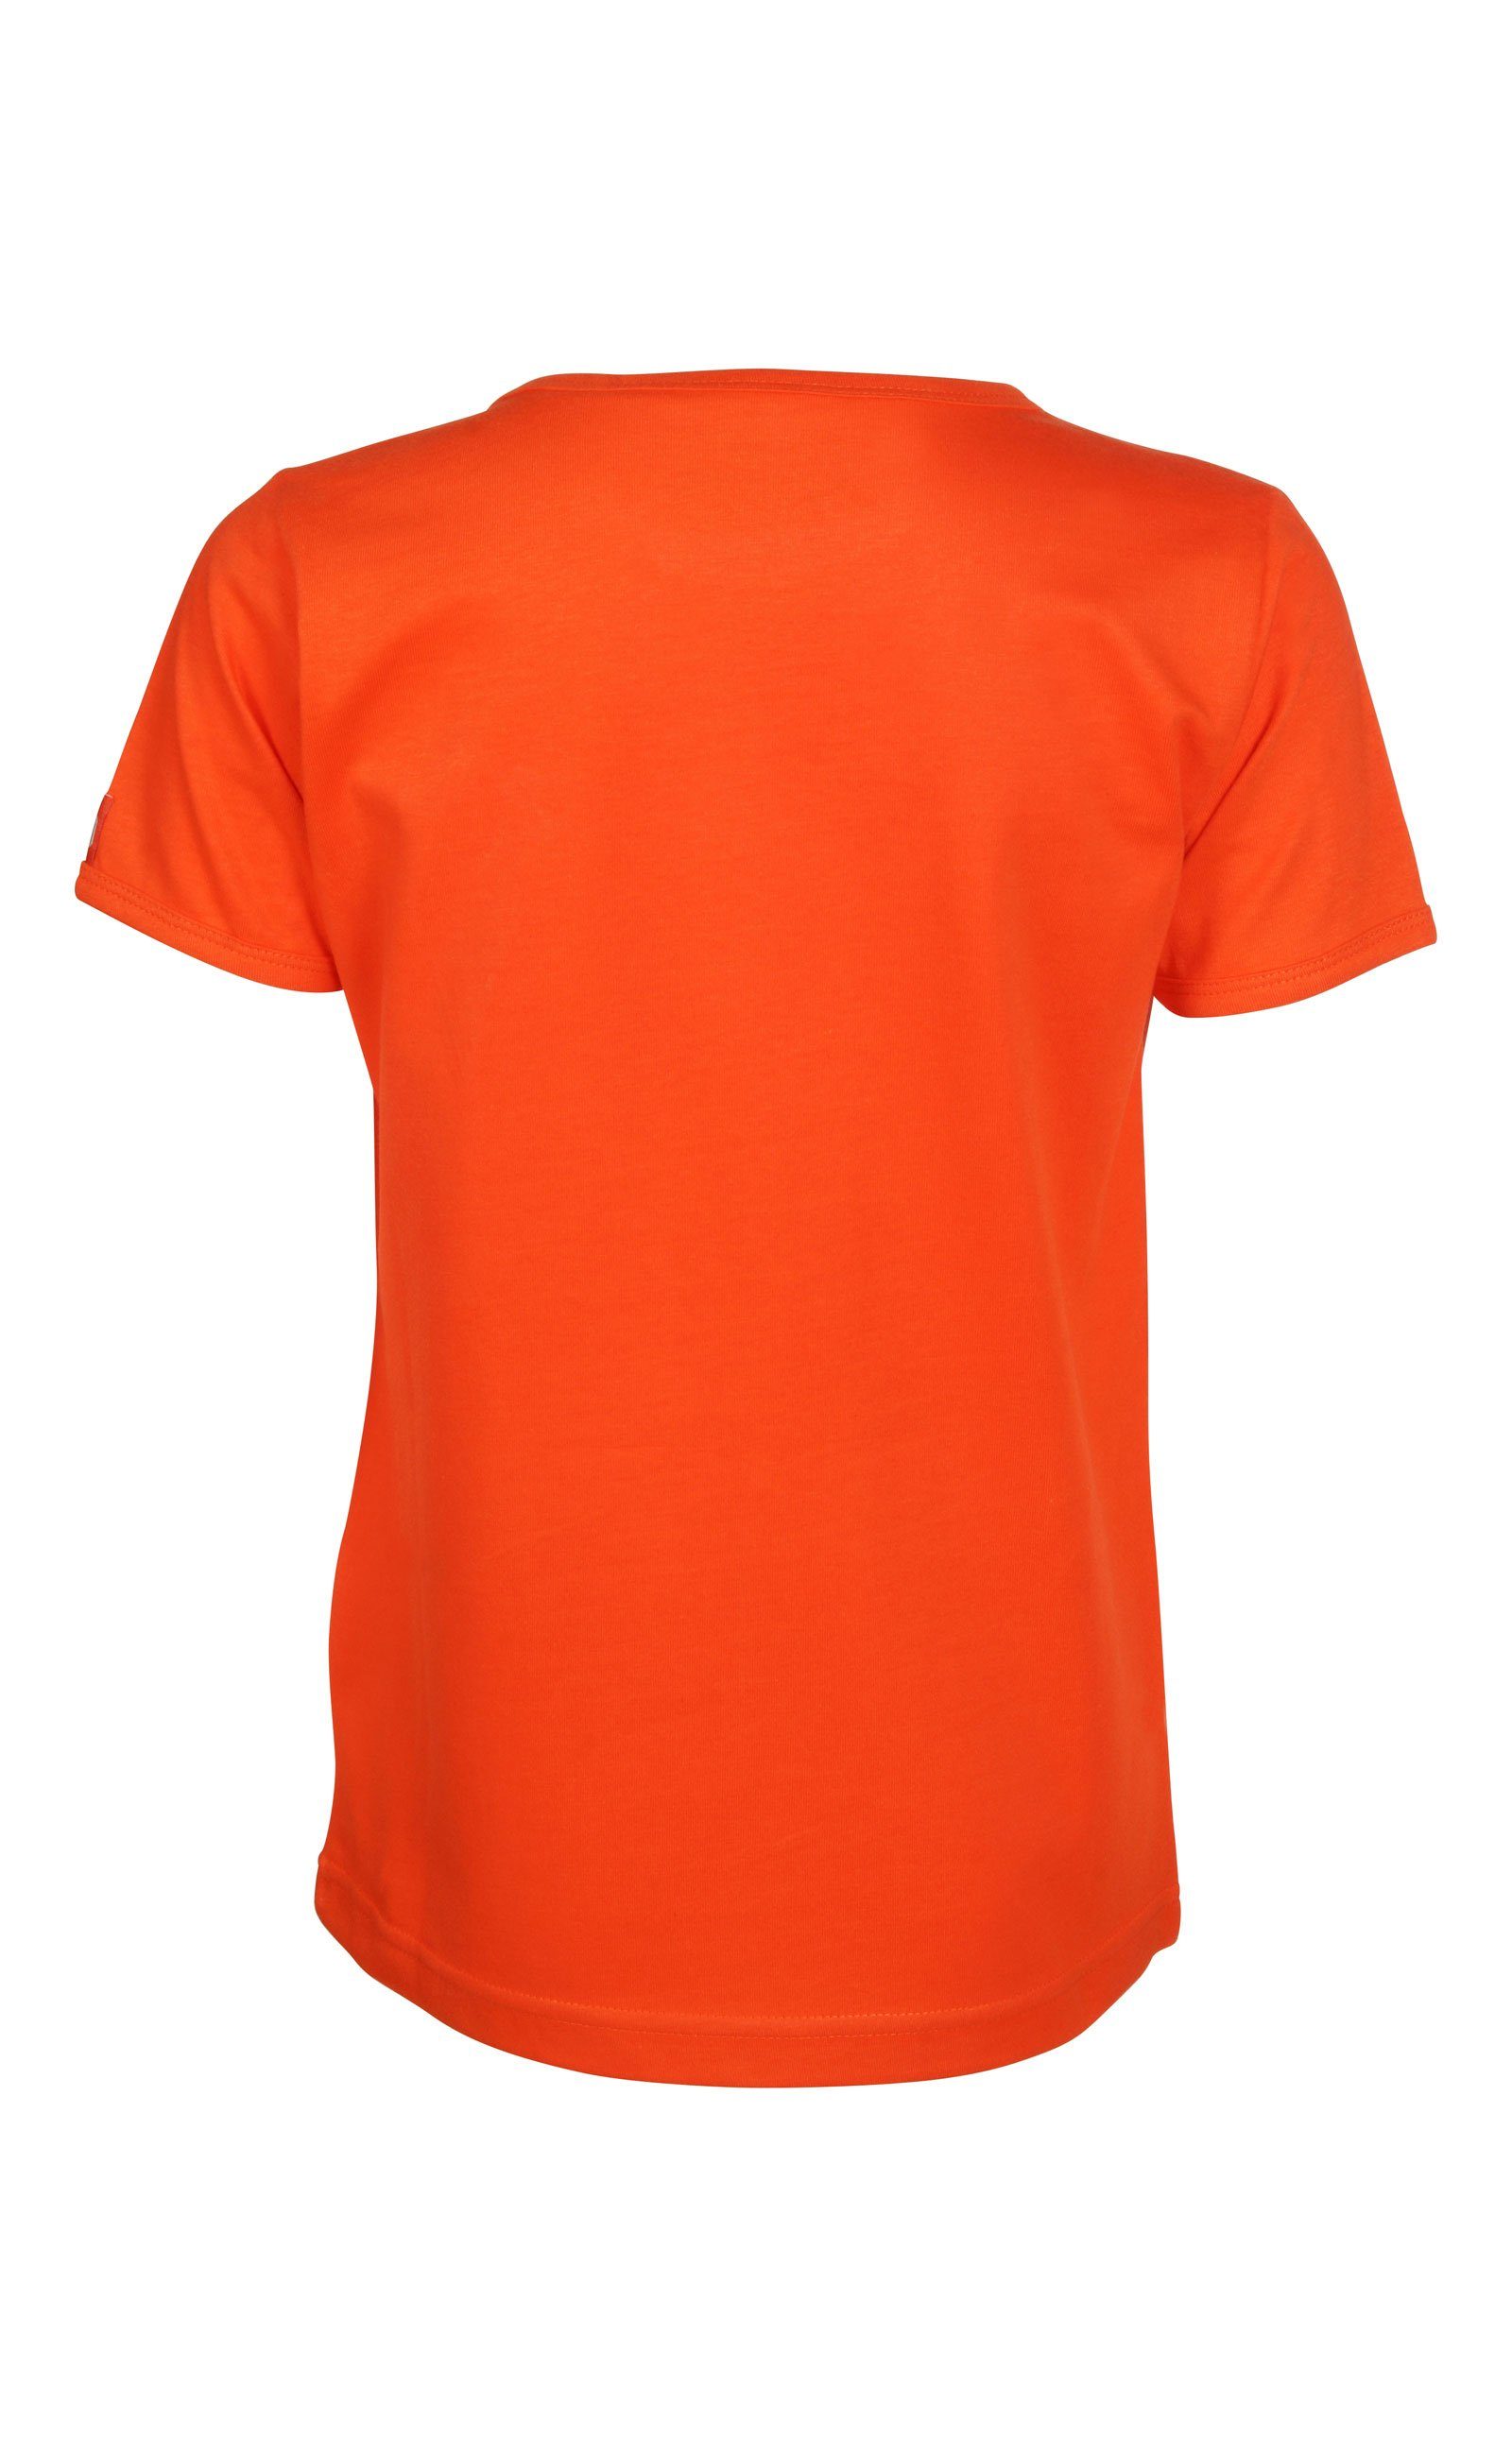 Elkline T-Shirt Stickerei cherrytomato kleine Eis leichter Mostwanted Jersey